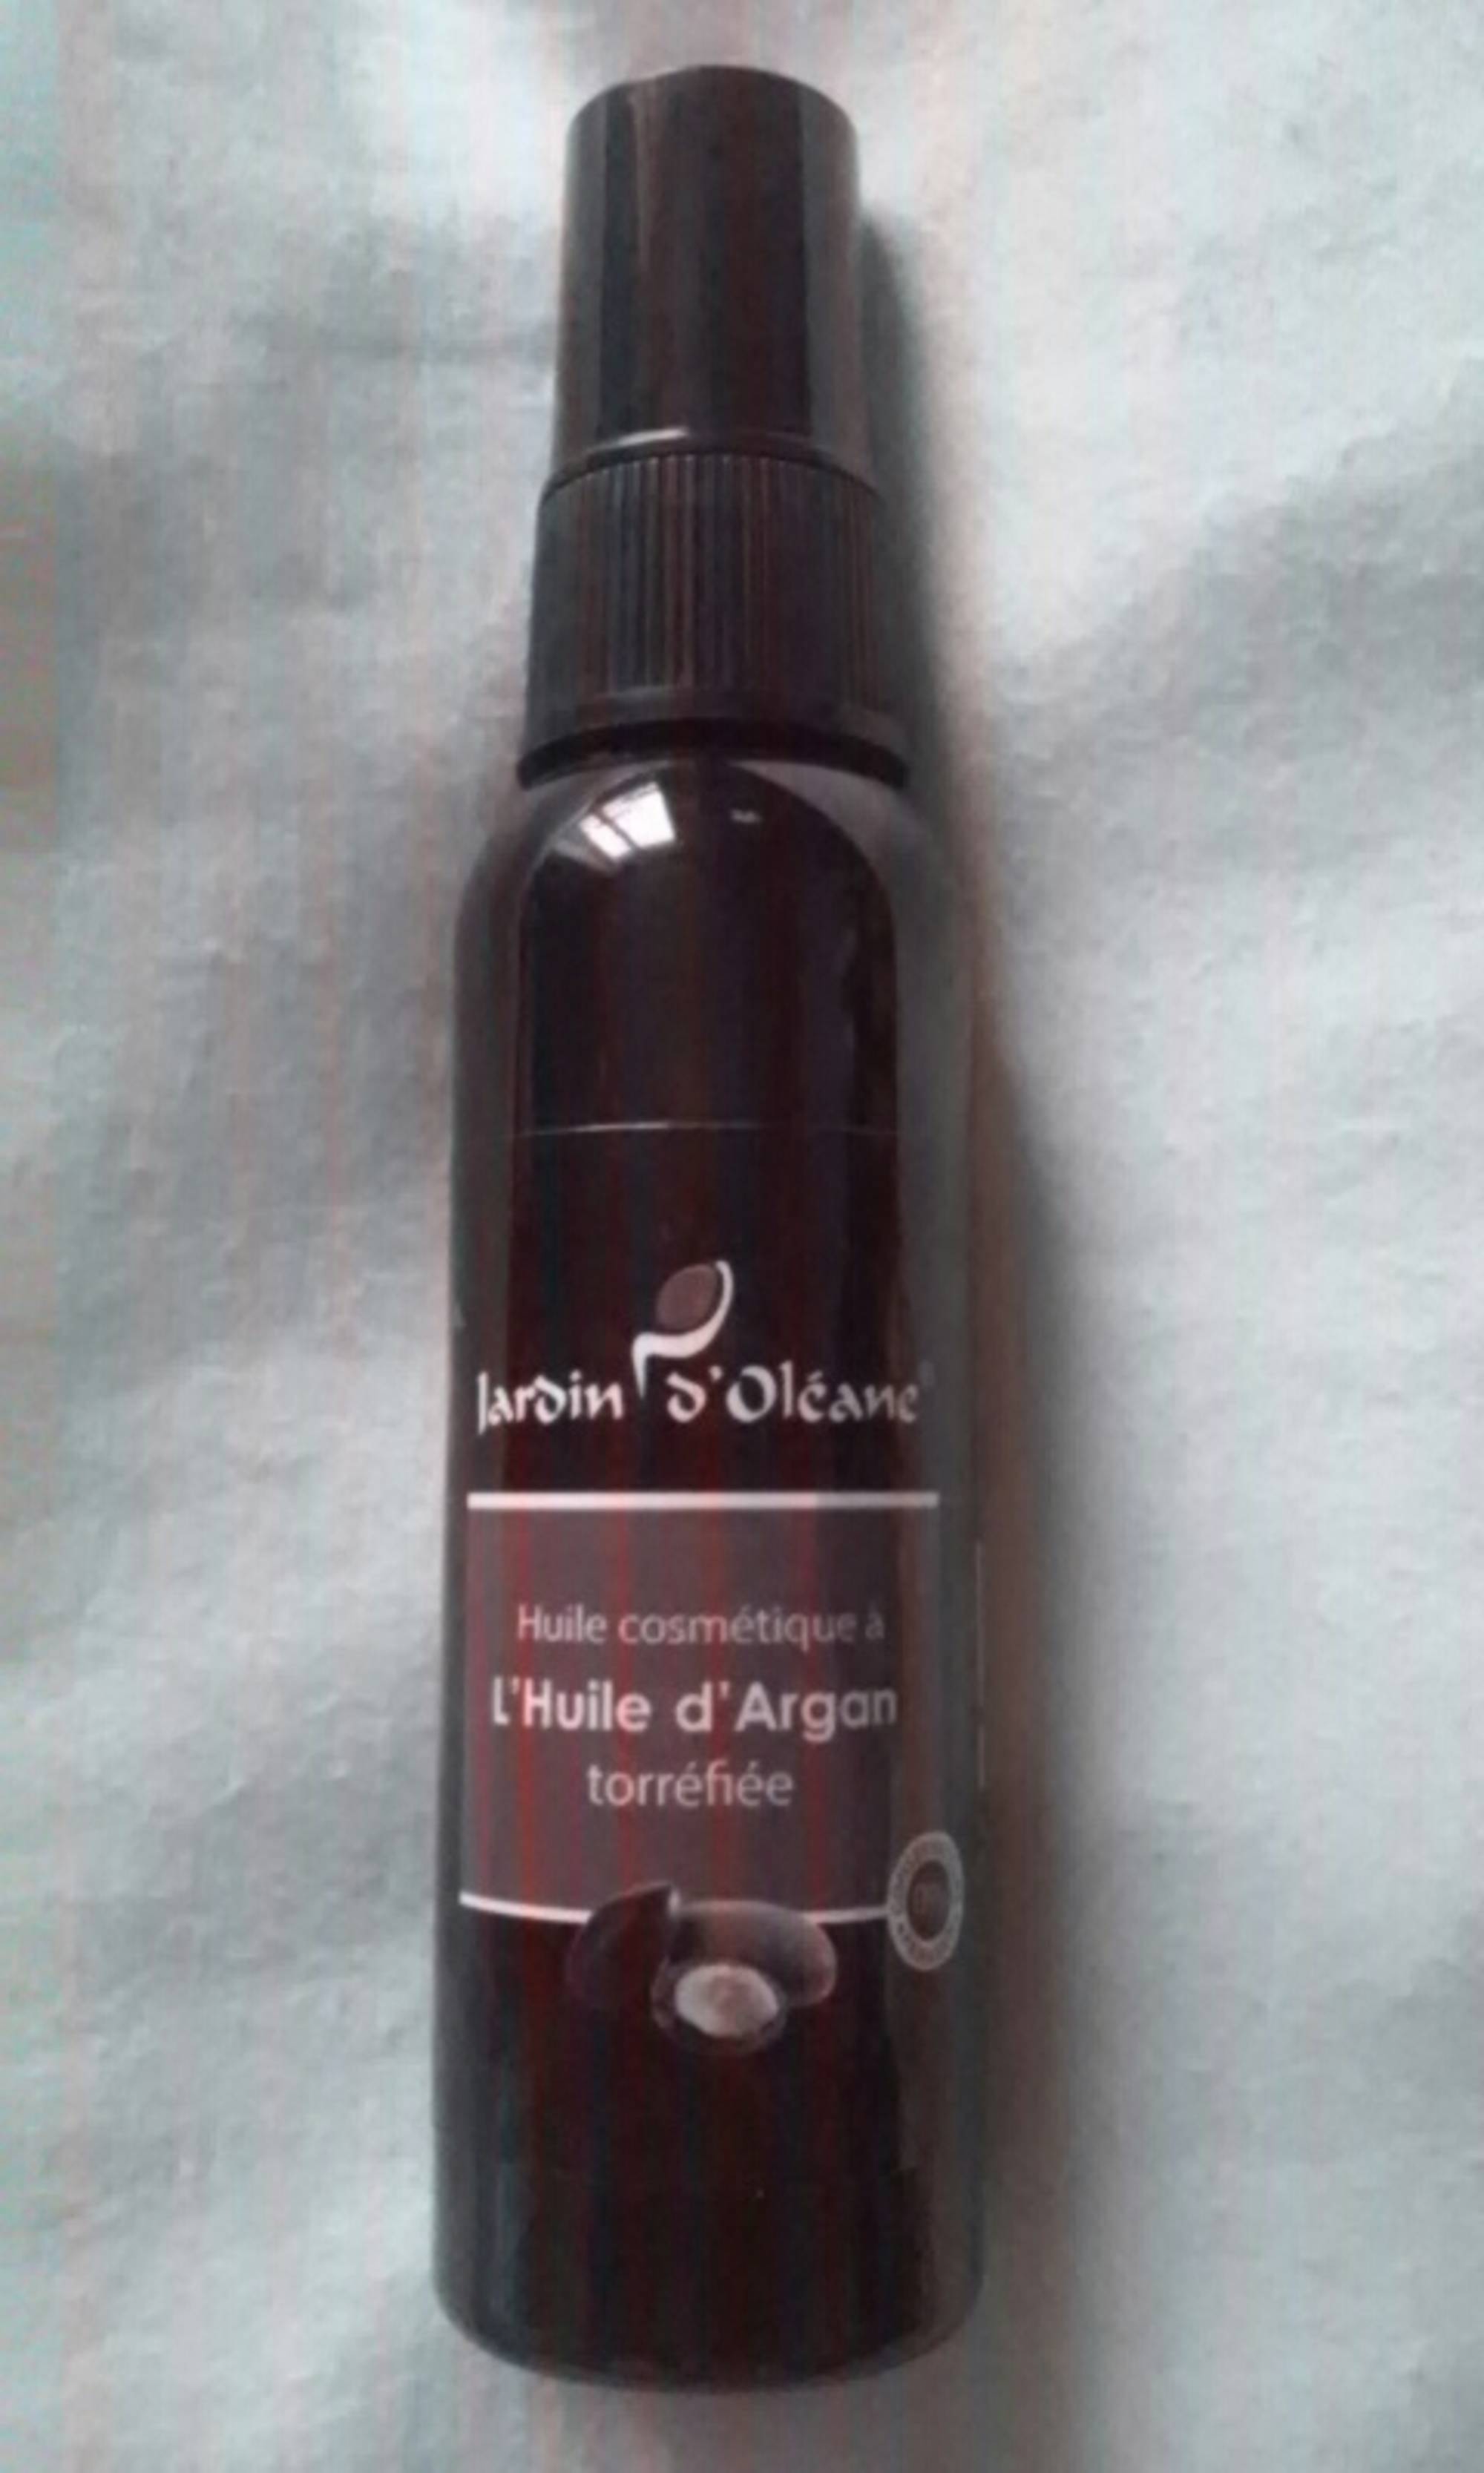 JARDIN D'OLÉANE - Huile cosmétique à l'huile d'Argan torréfiée